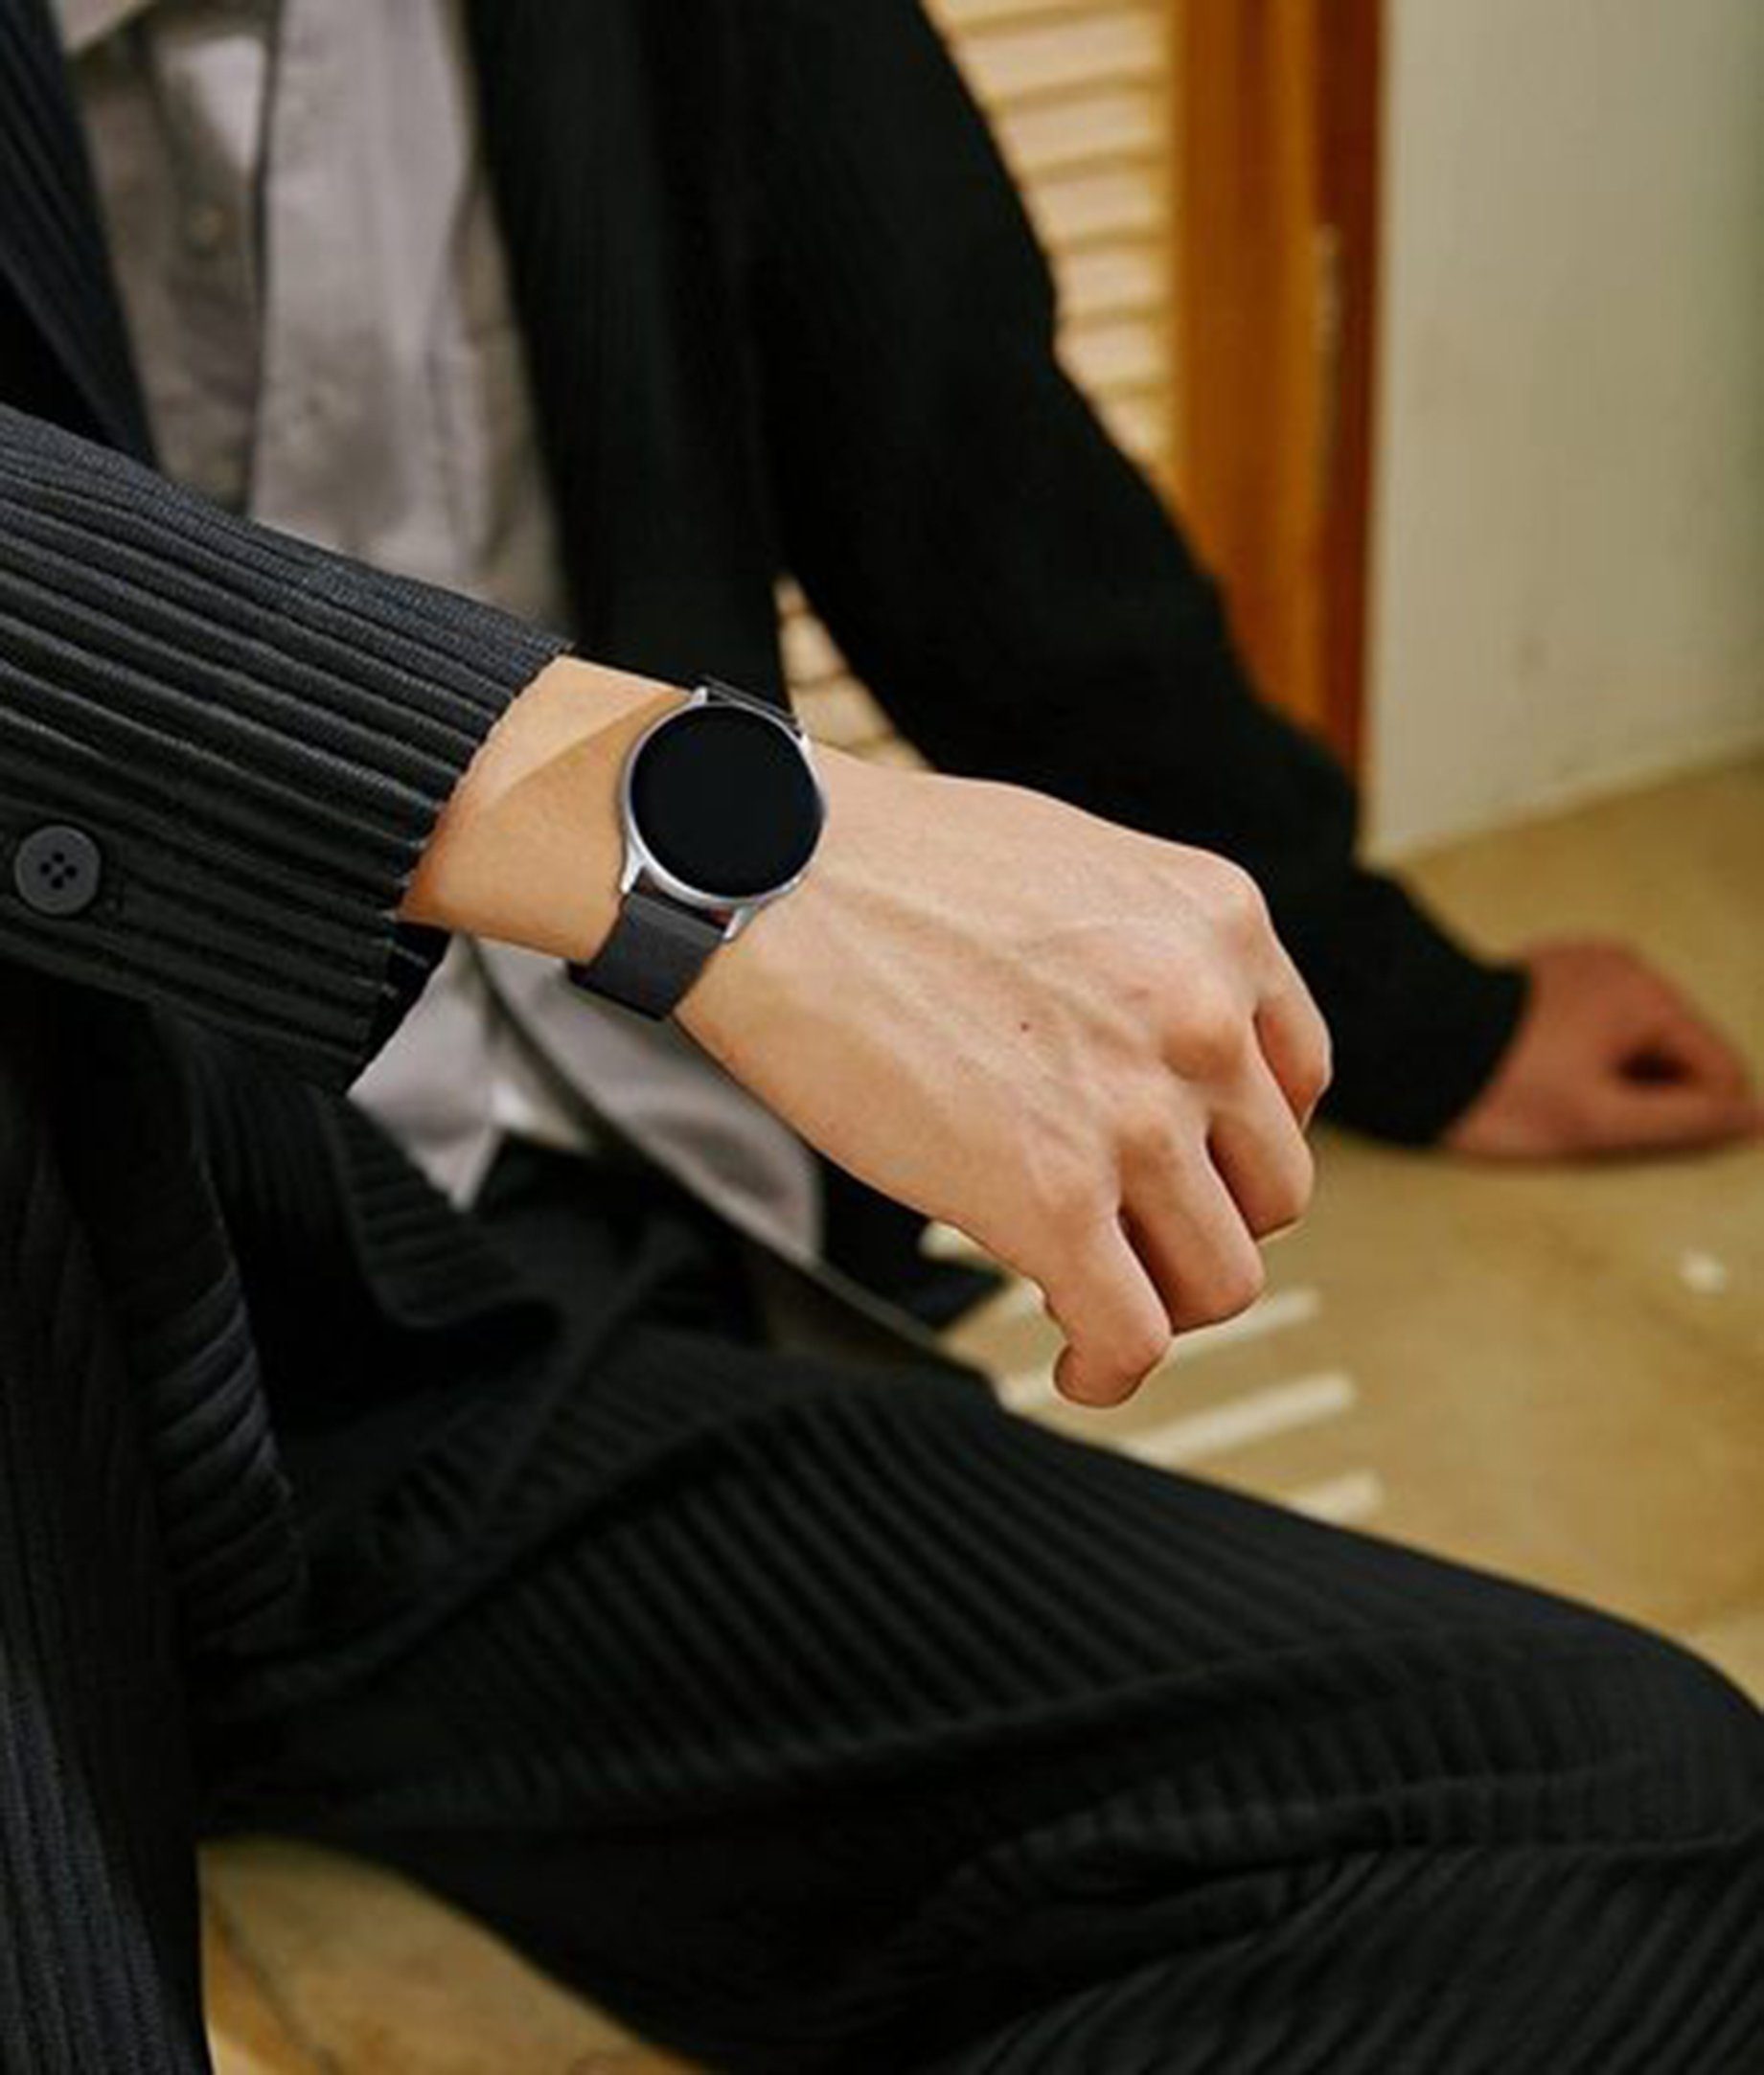 Versa für Fitbit /Lite/ Smartwatch-Armband, SE/Schwarz / Uhrenarmband Versa 2 Diida Uhrenarmbänder,